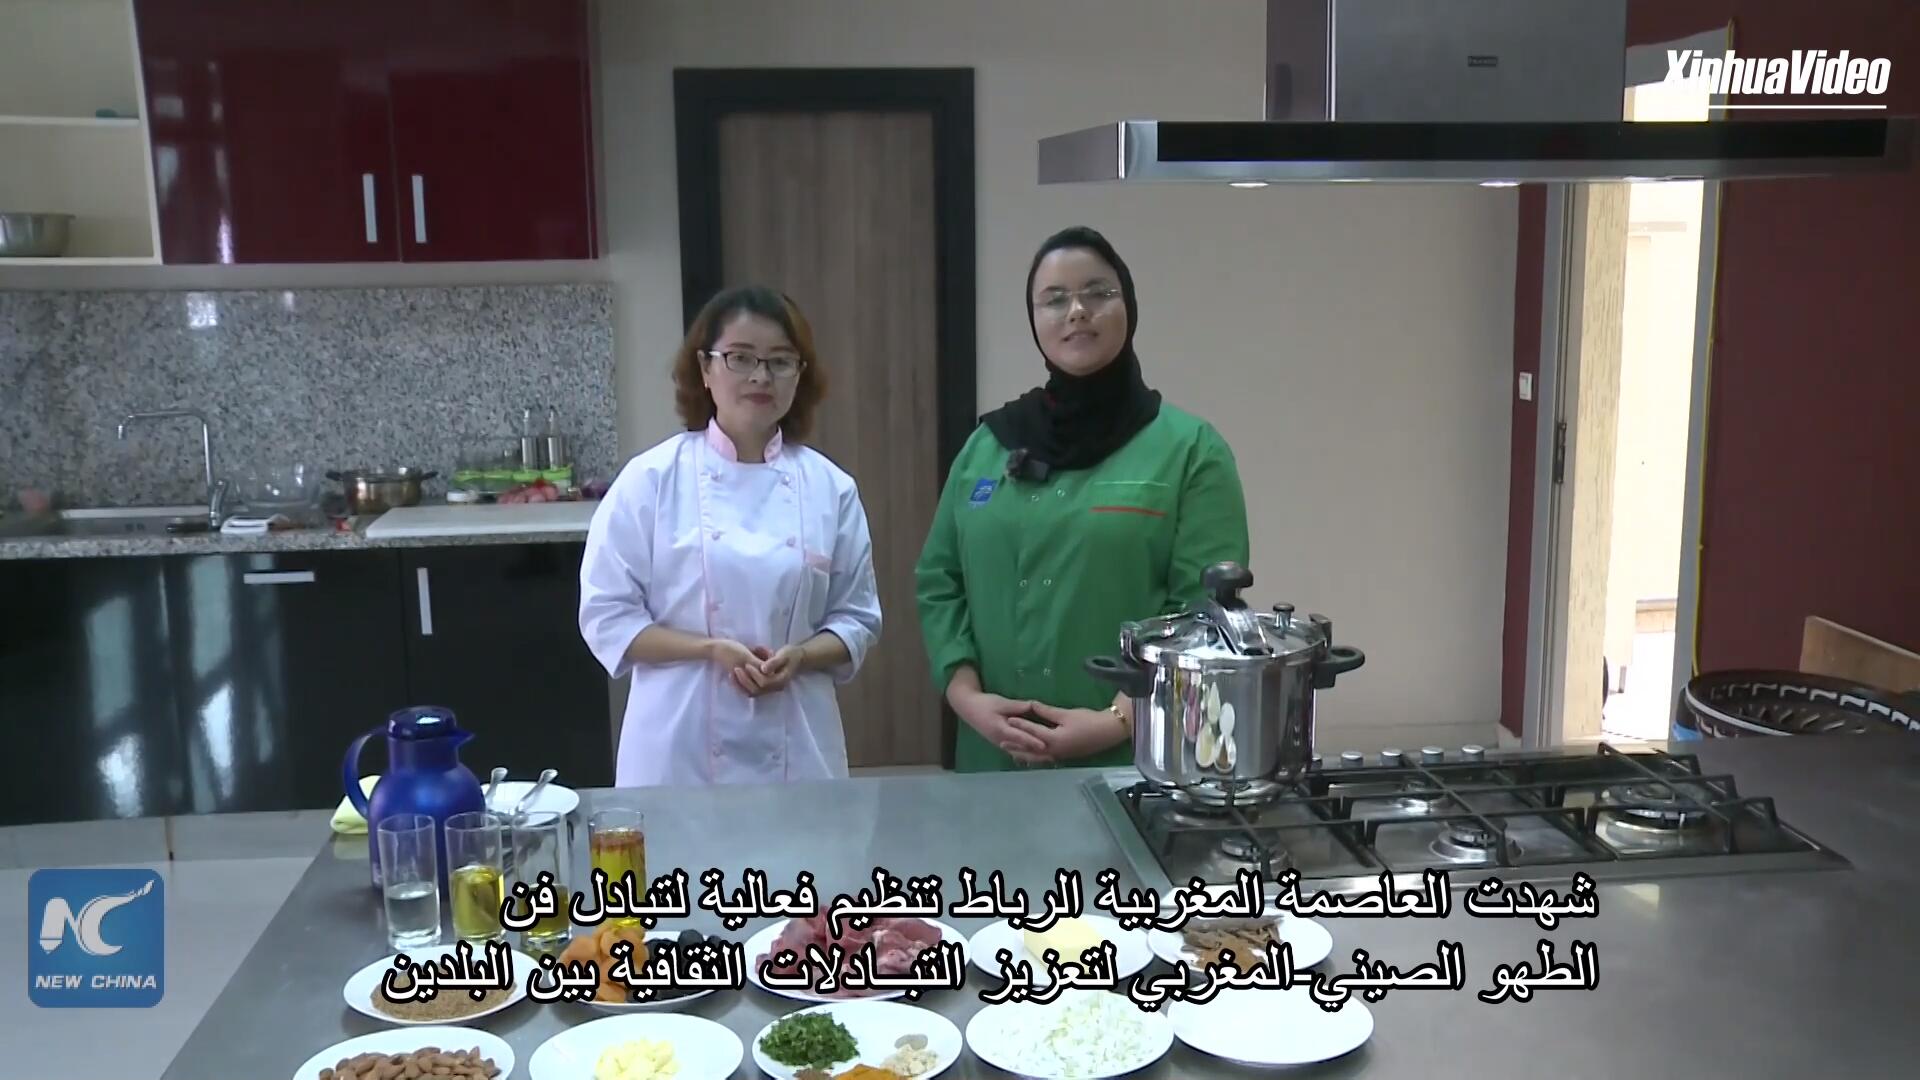 فيديو: إقامة فعالية لتبادل فن الطهو الصيني-المغربي في الرباط خلال شهر رمضان